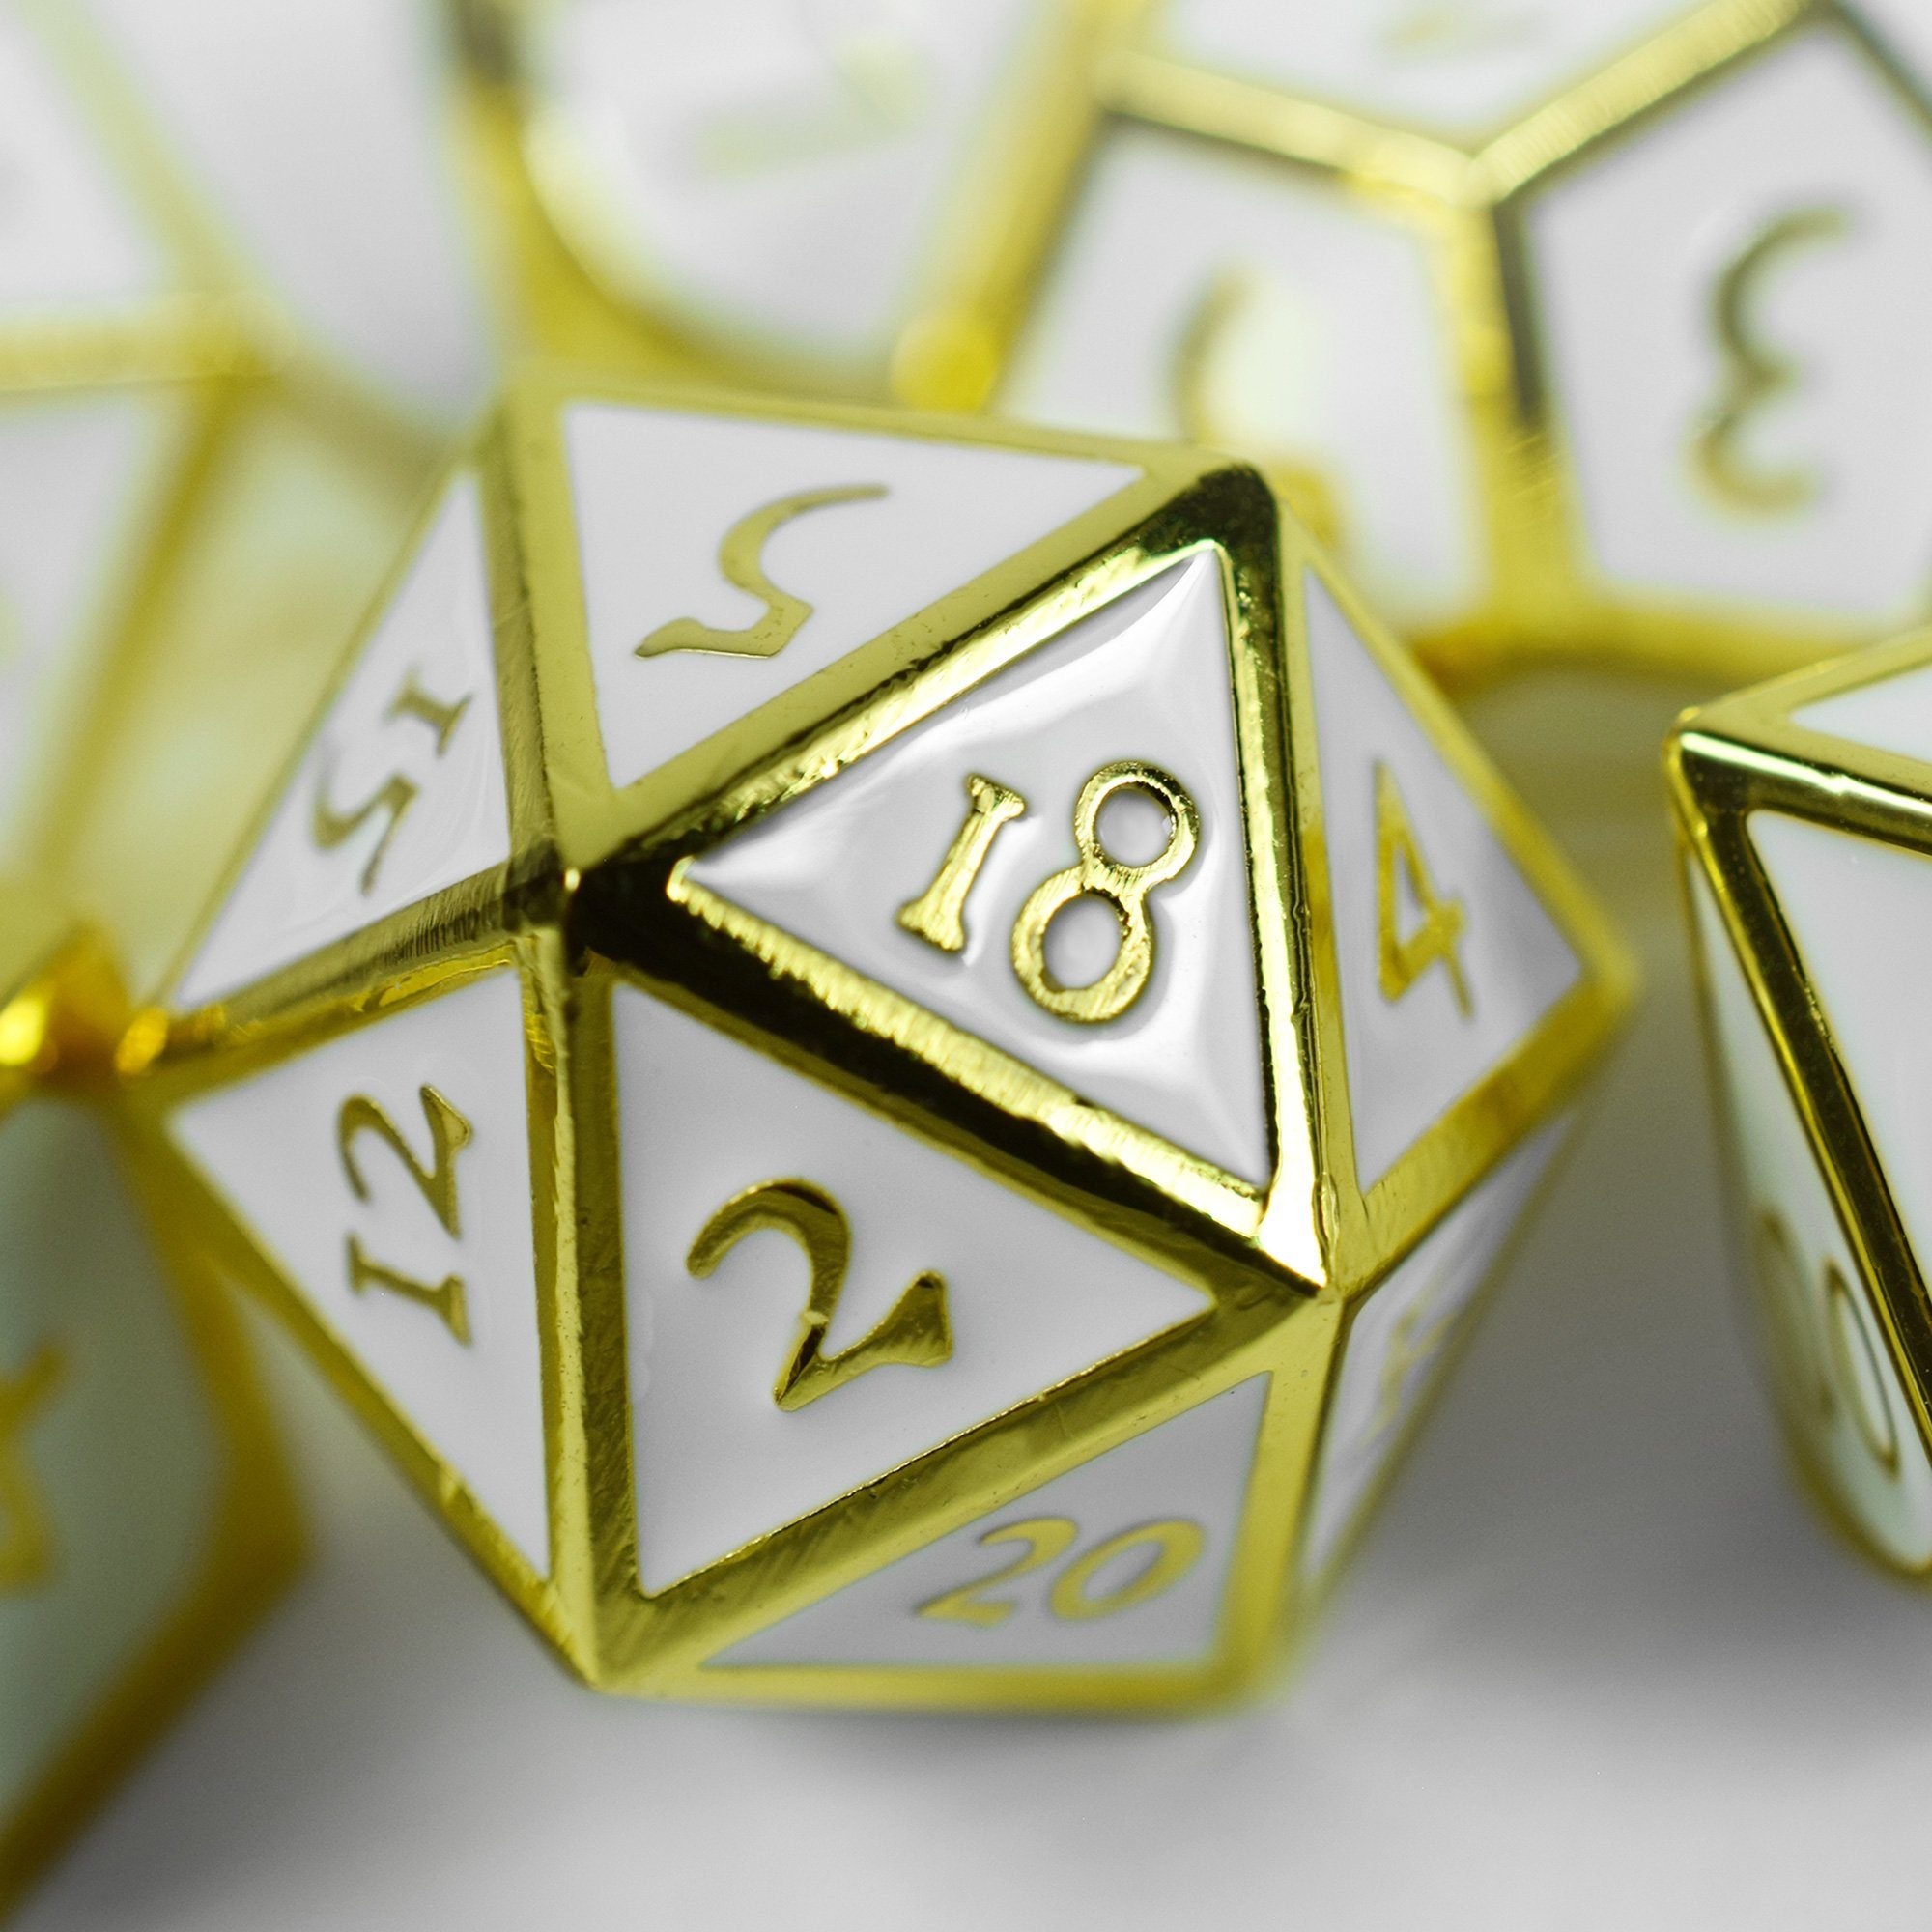 SHIBBY Spielesammlung, 7 polyedrische Metall-DND-Würfel inkl. Aufbewahrungsbox Optik, Gold/Weiß in Steampunk